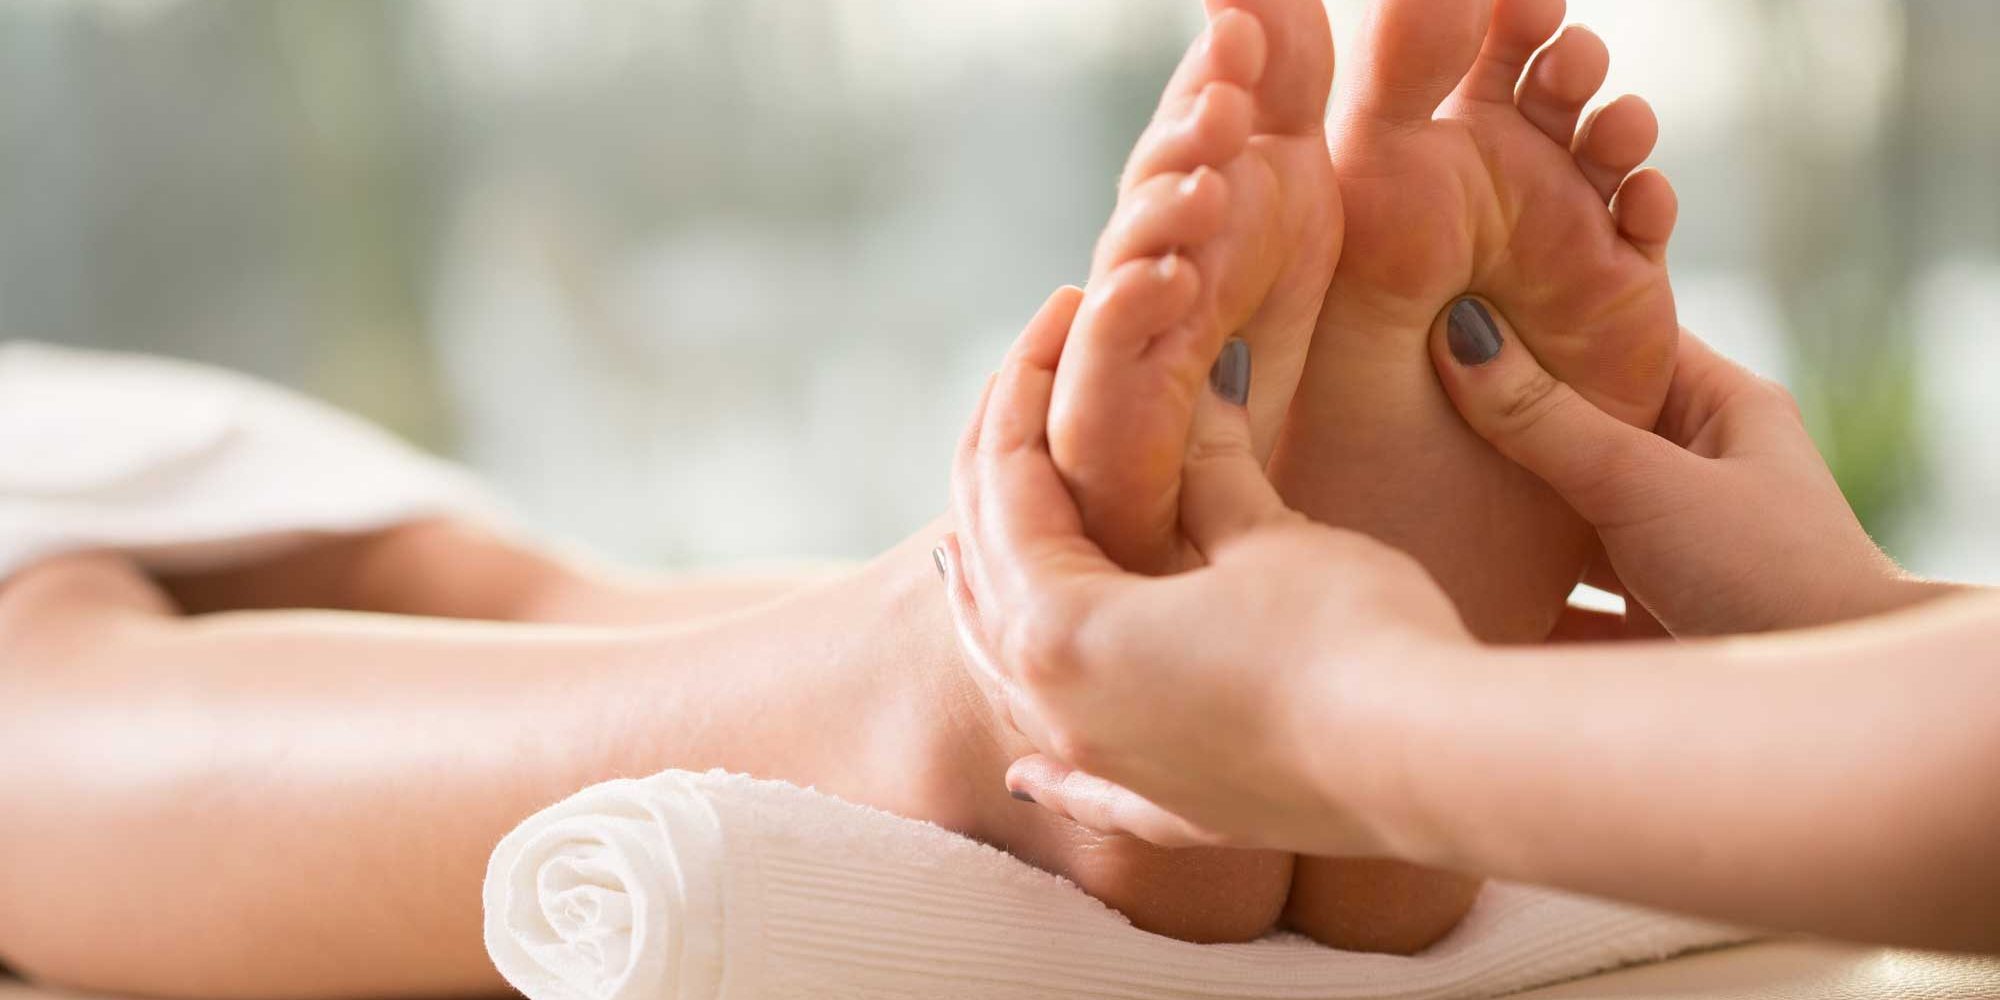 Feet Reflexology foot massage